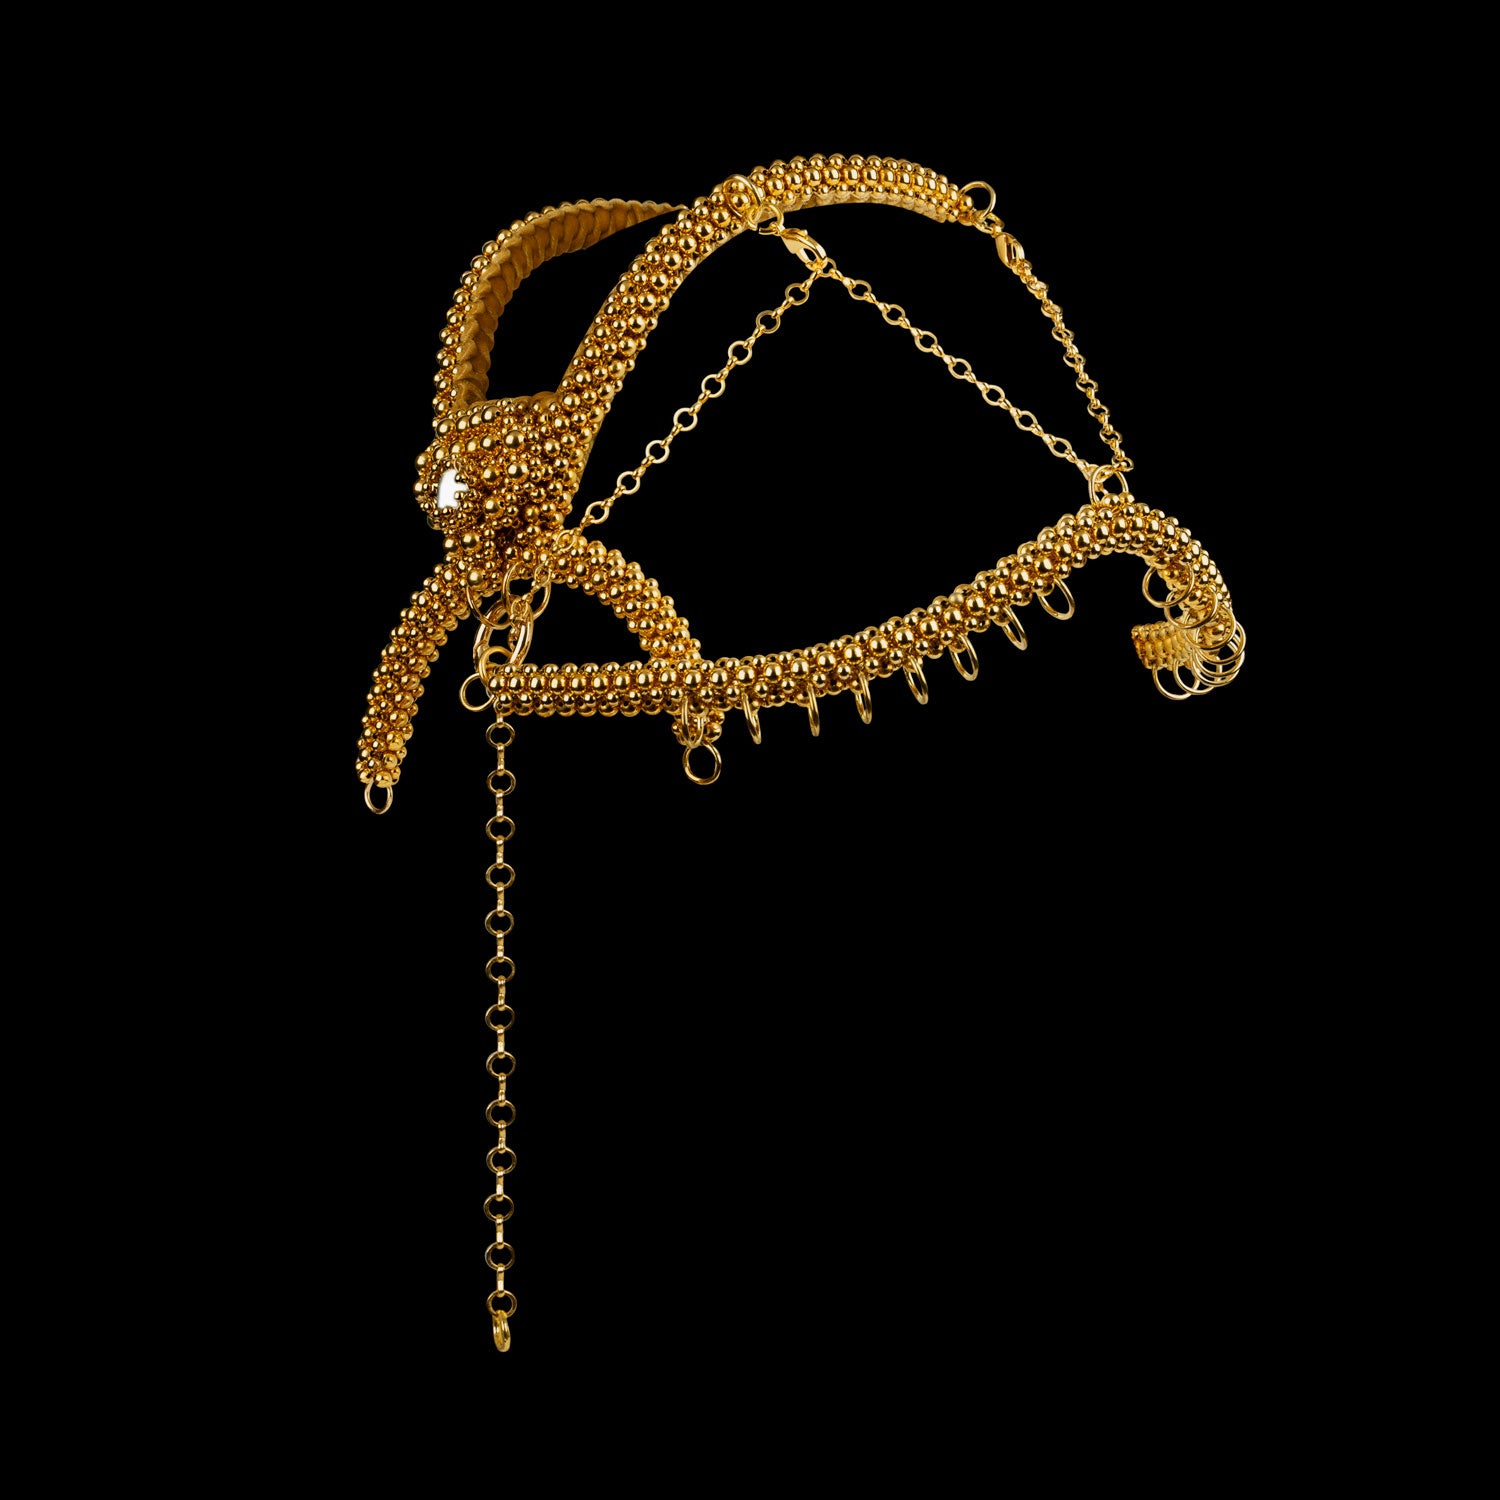 Gold Khutulun Modular Headpiece System